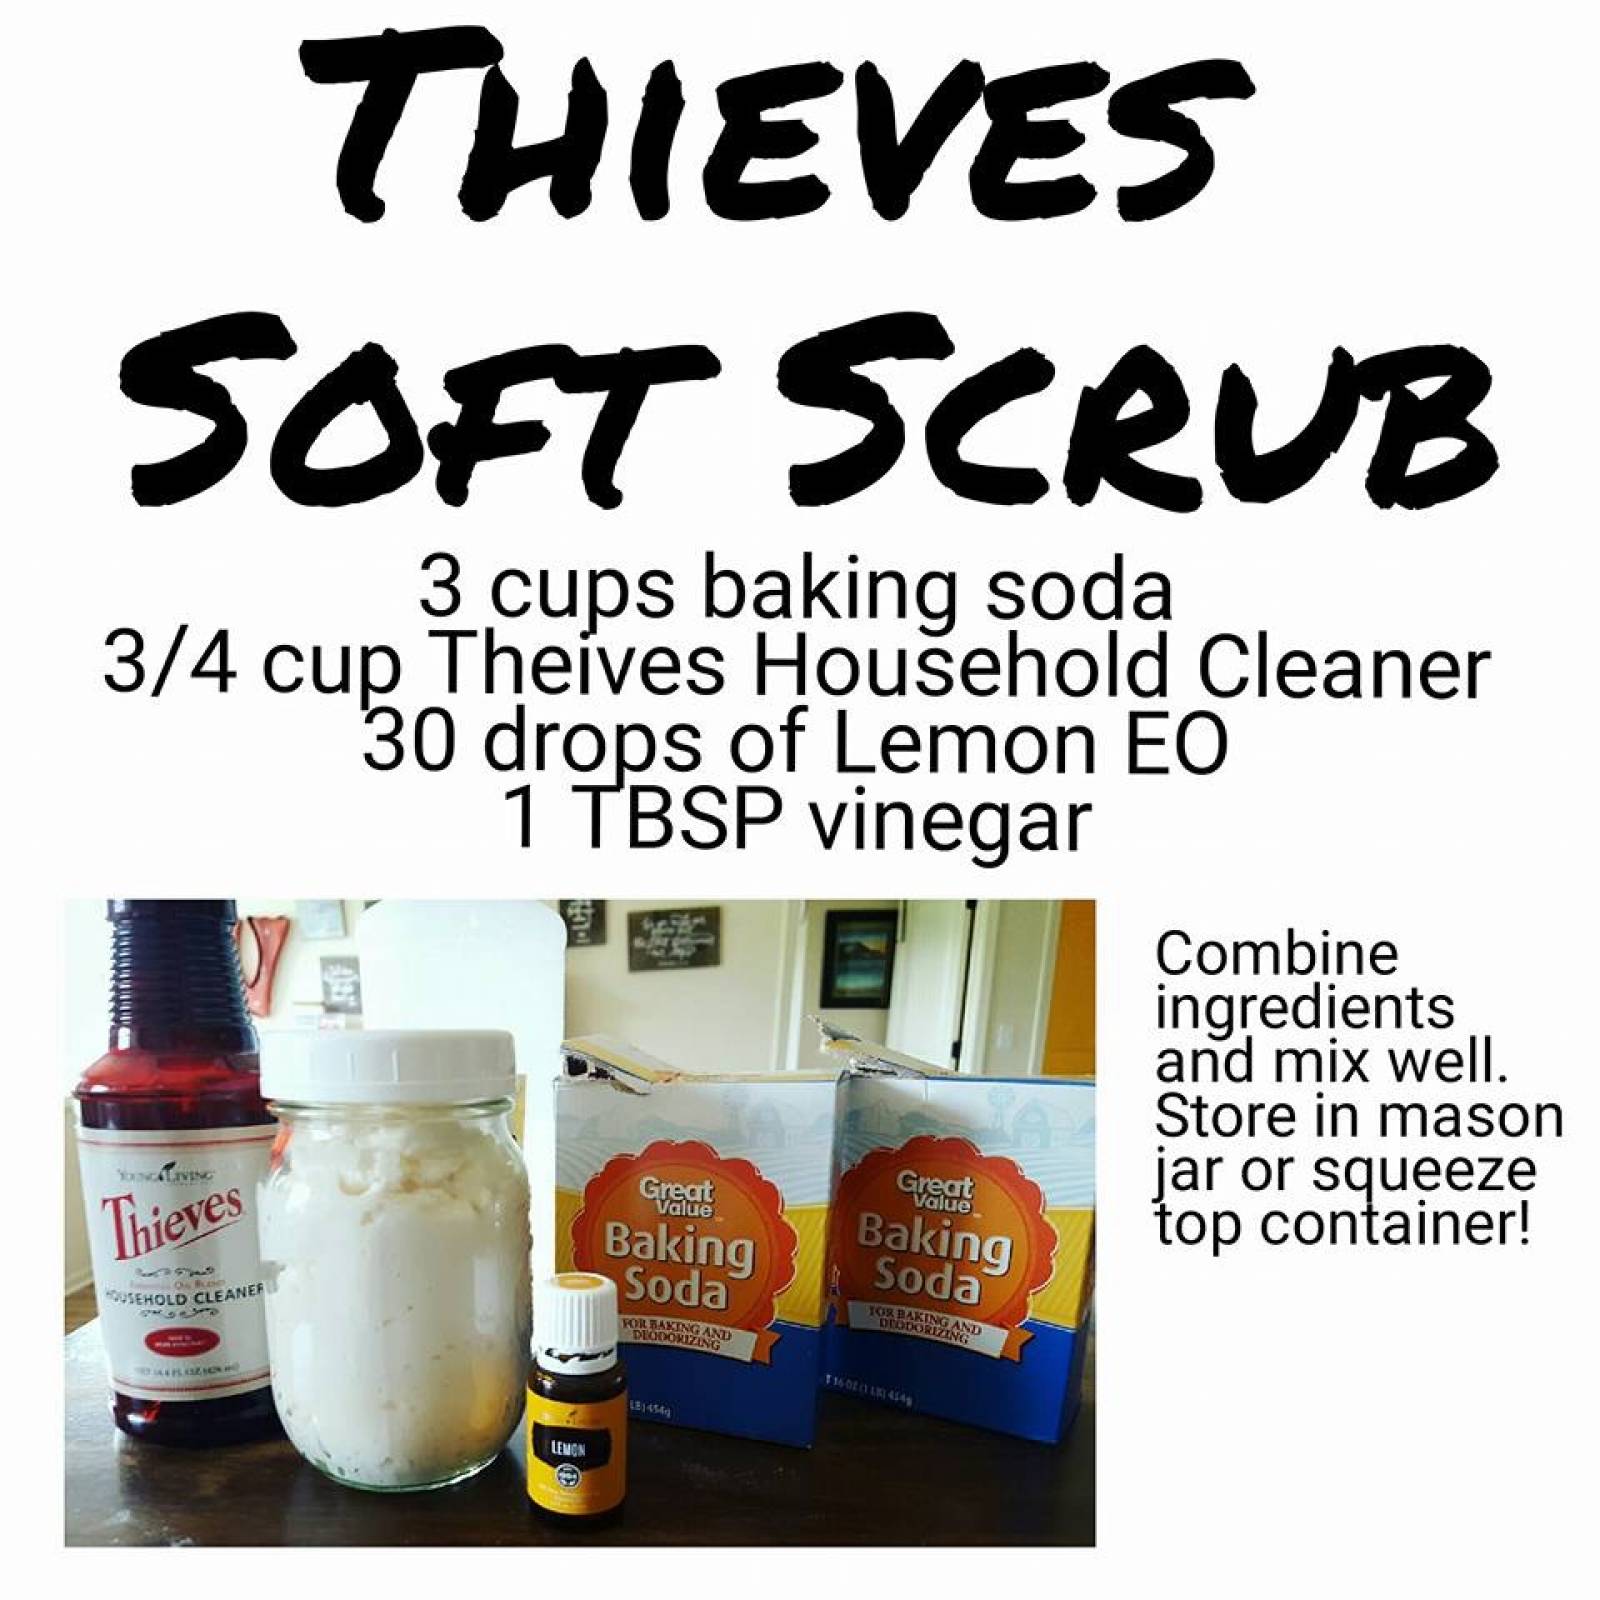 Toxic free soft scrub